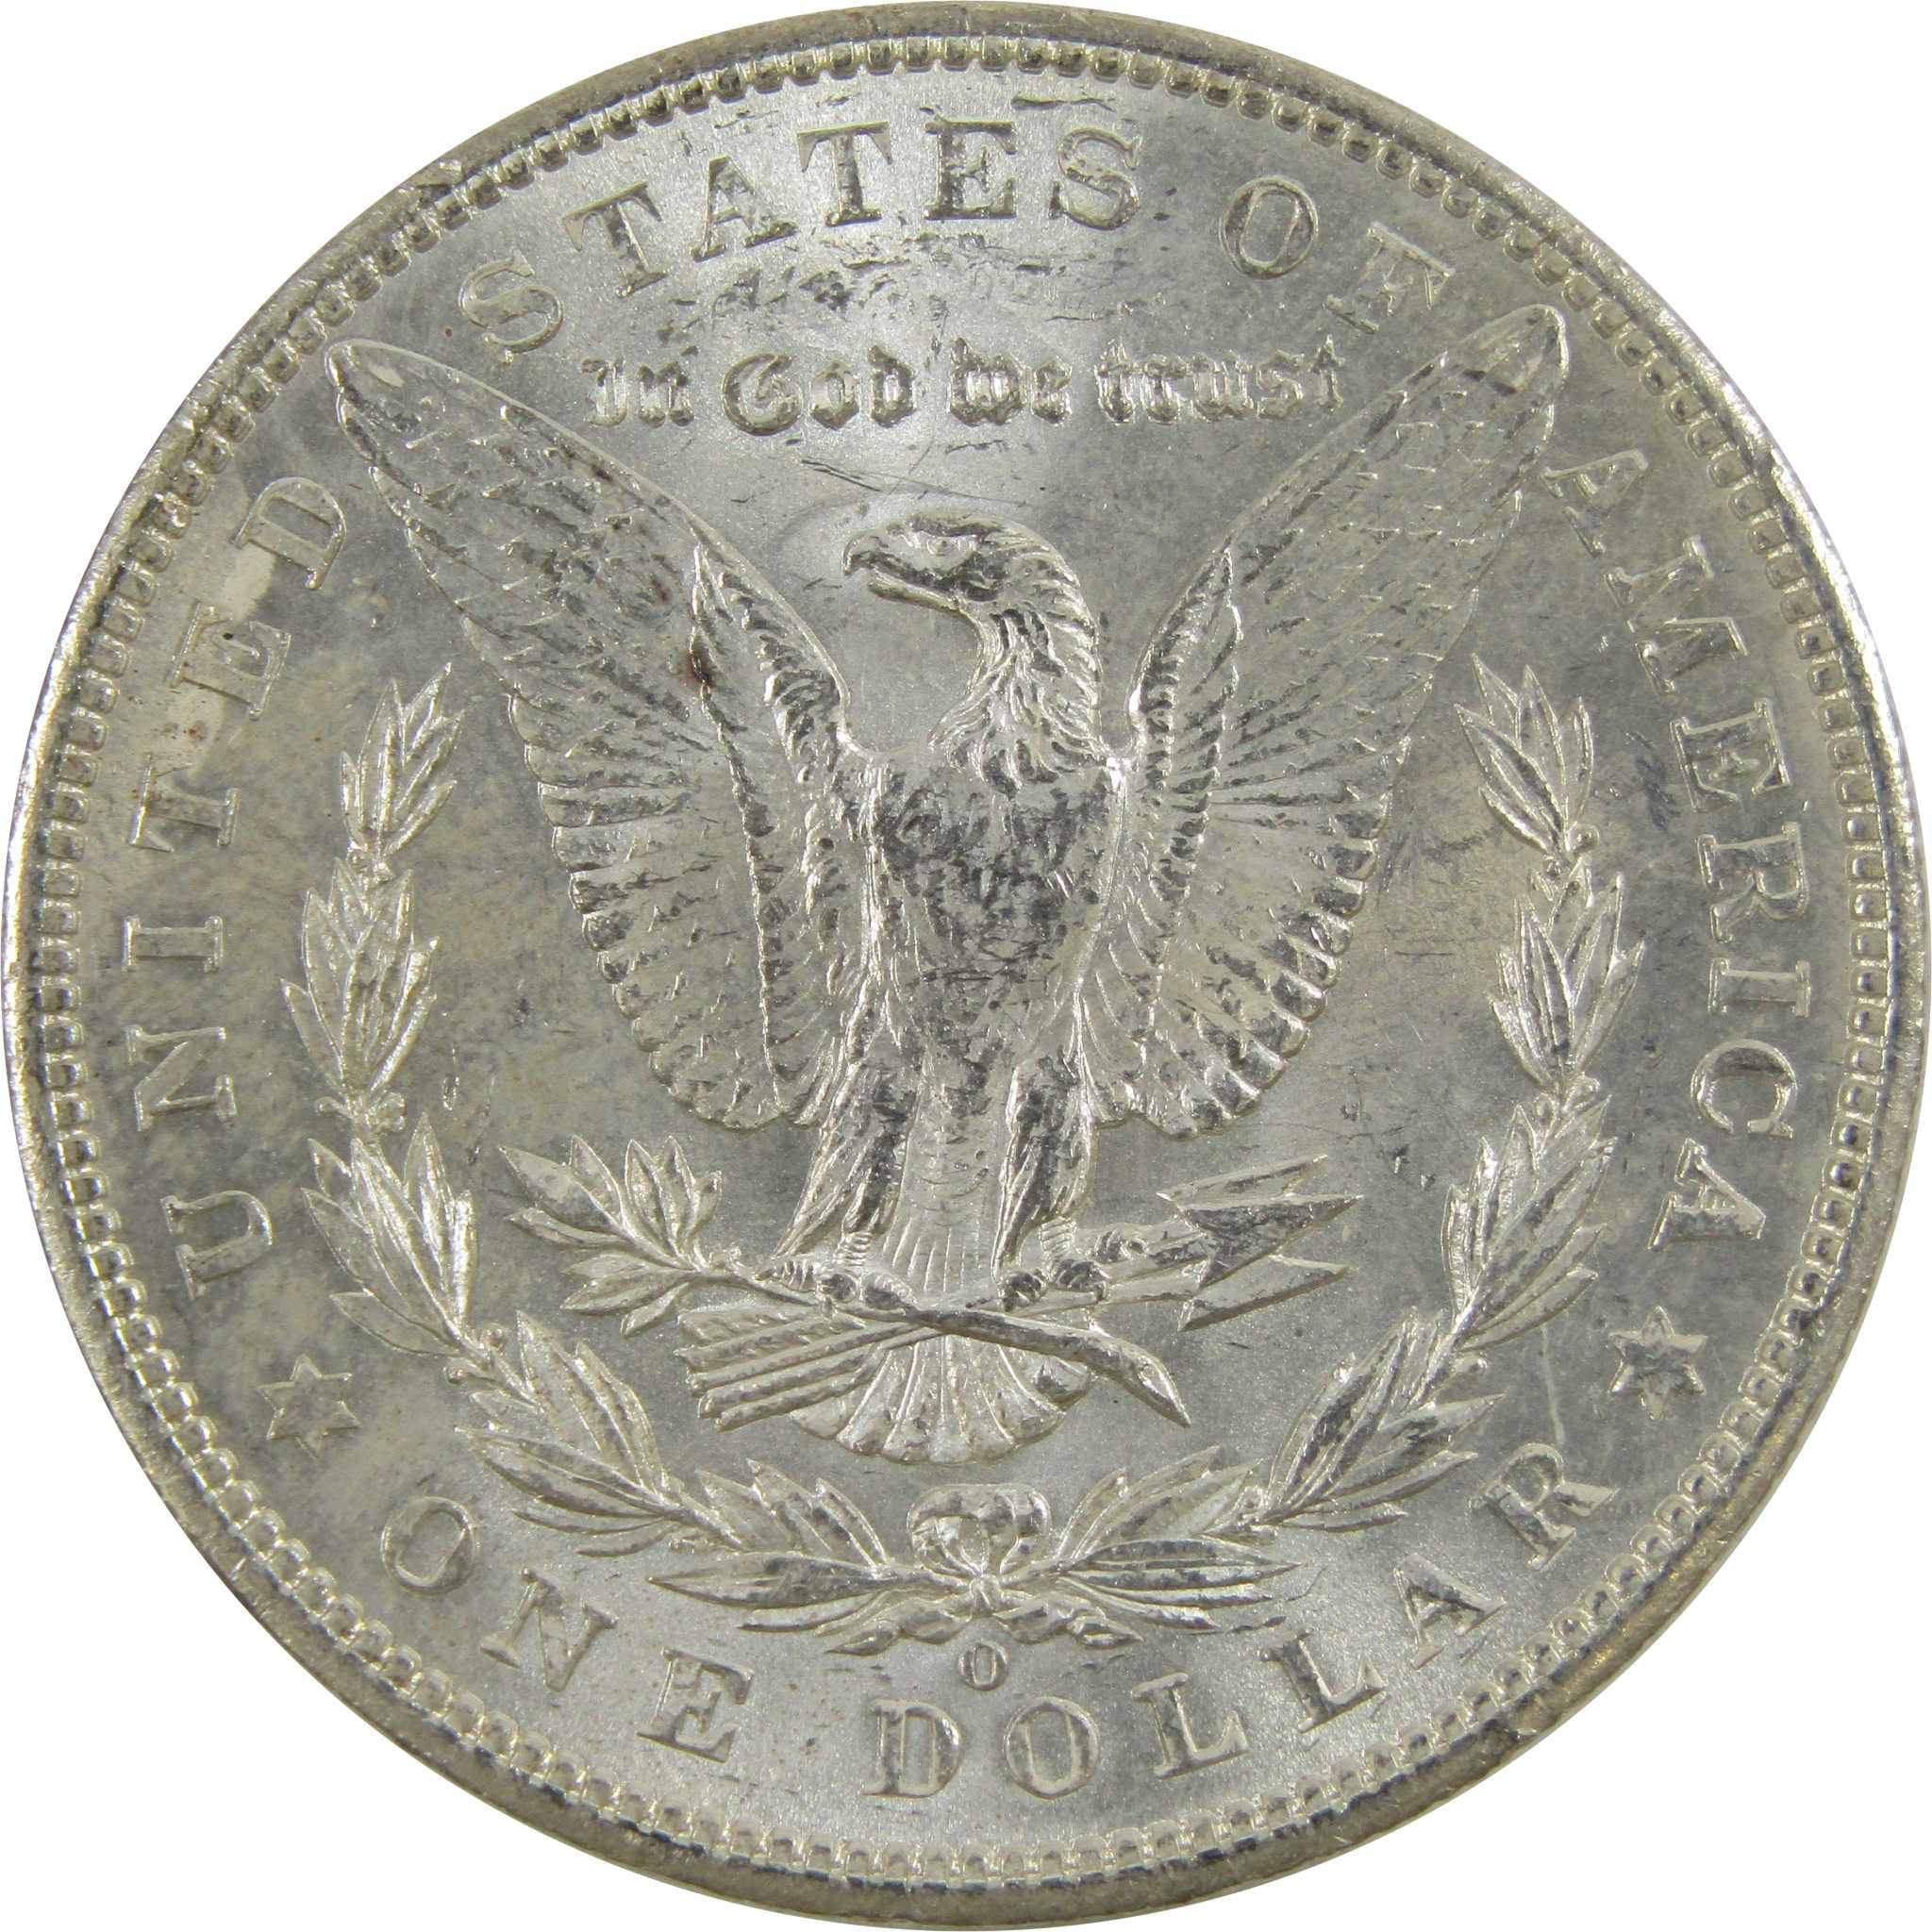 1902 O Morgan Dollar BU Uncirculated 90% Silver $1 Coin SKU:I5209 - Morgan coin - Morgan silver dollar - Morgan silver dollar for sale - Profile Coins &amp; Collectibles